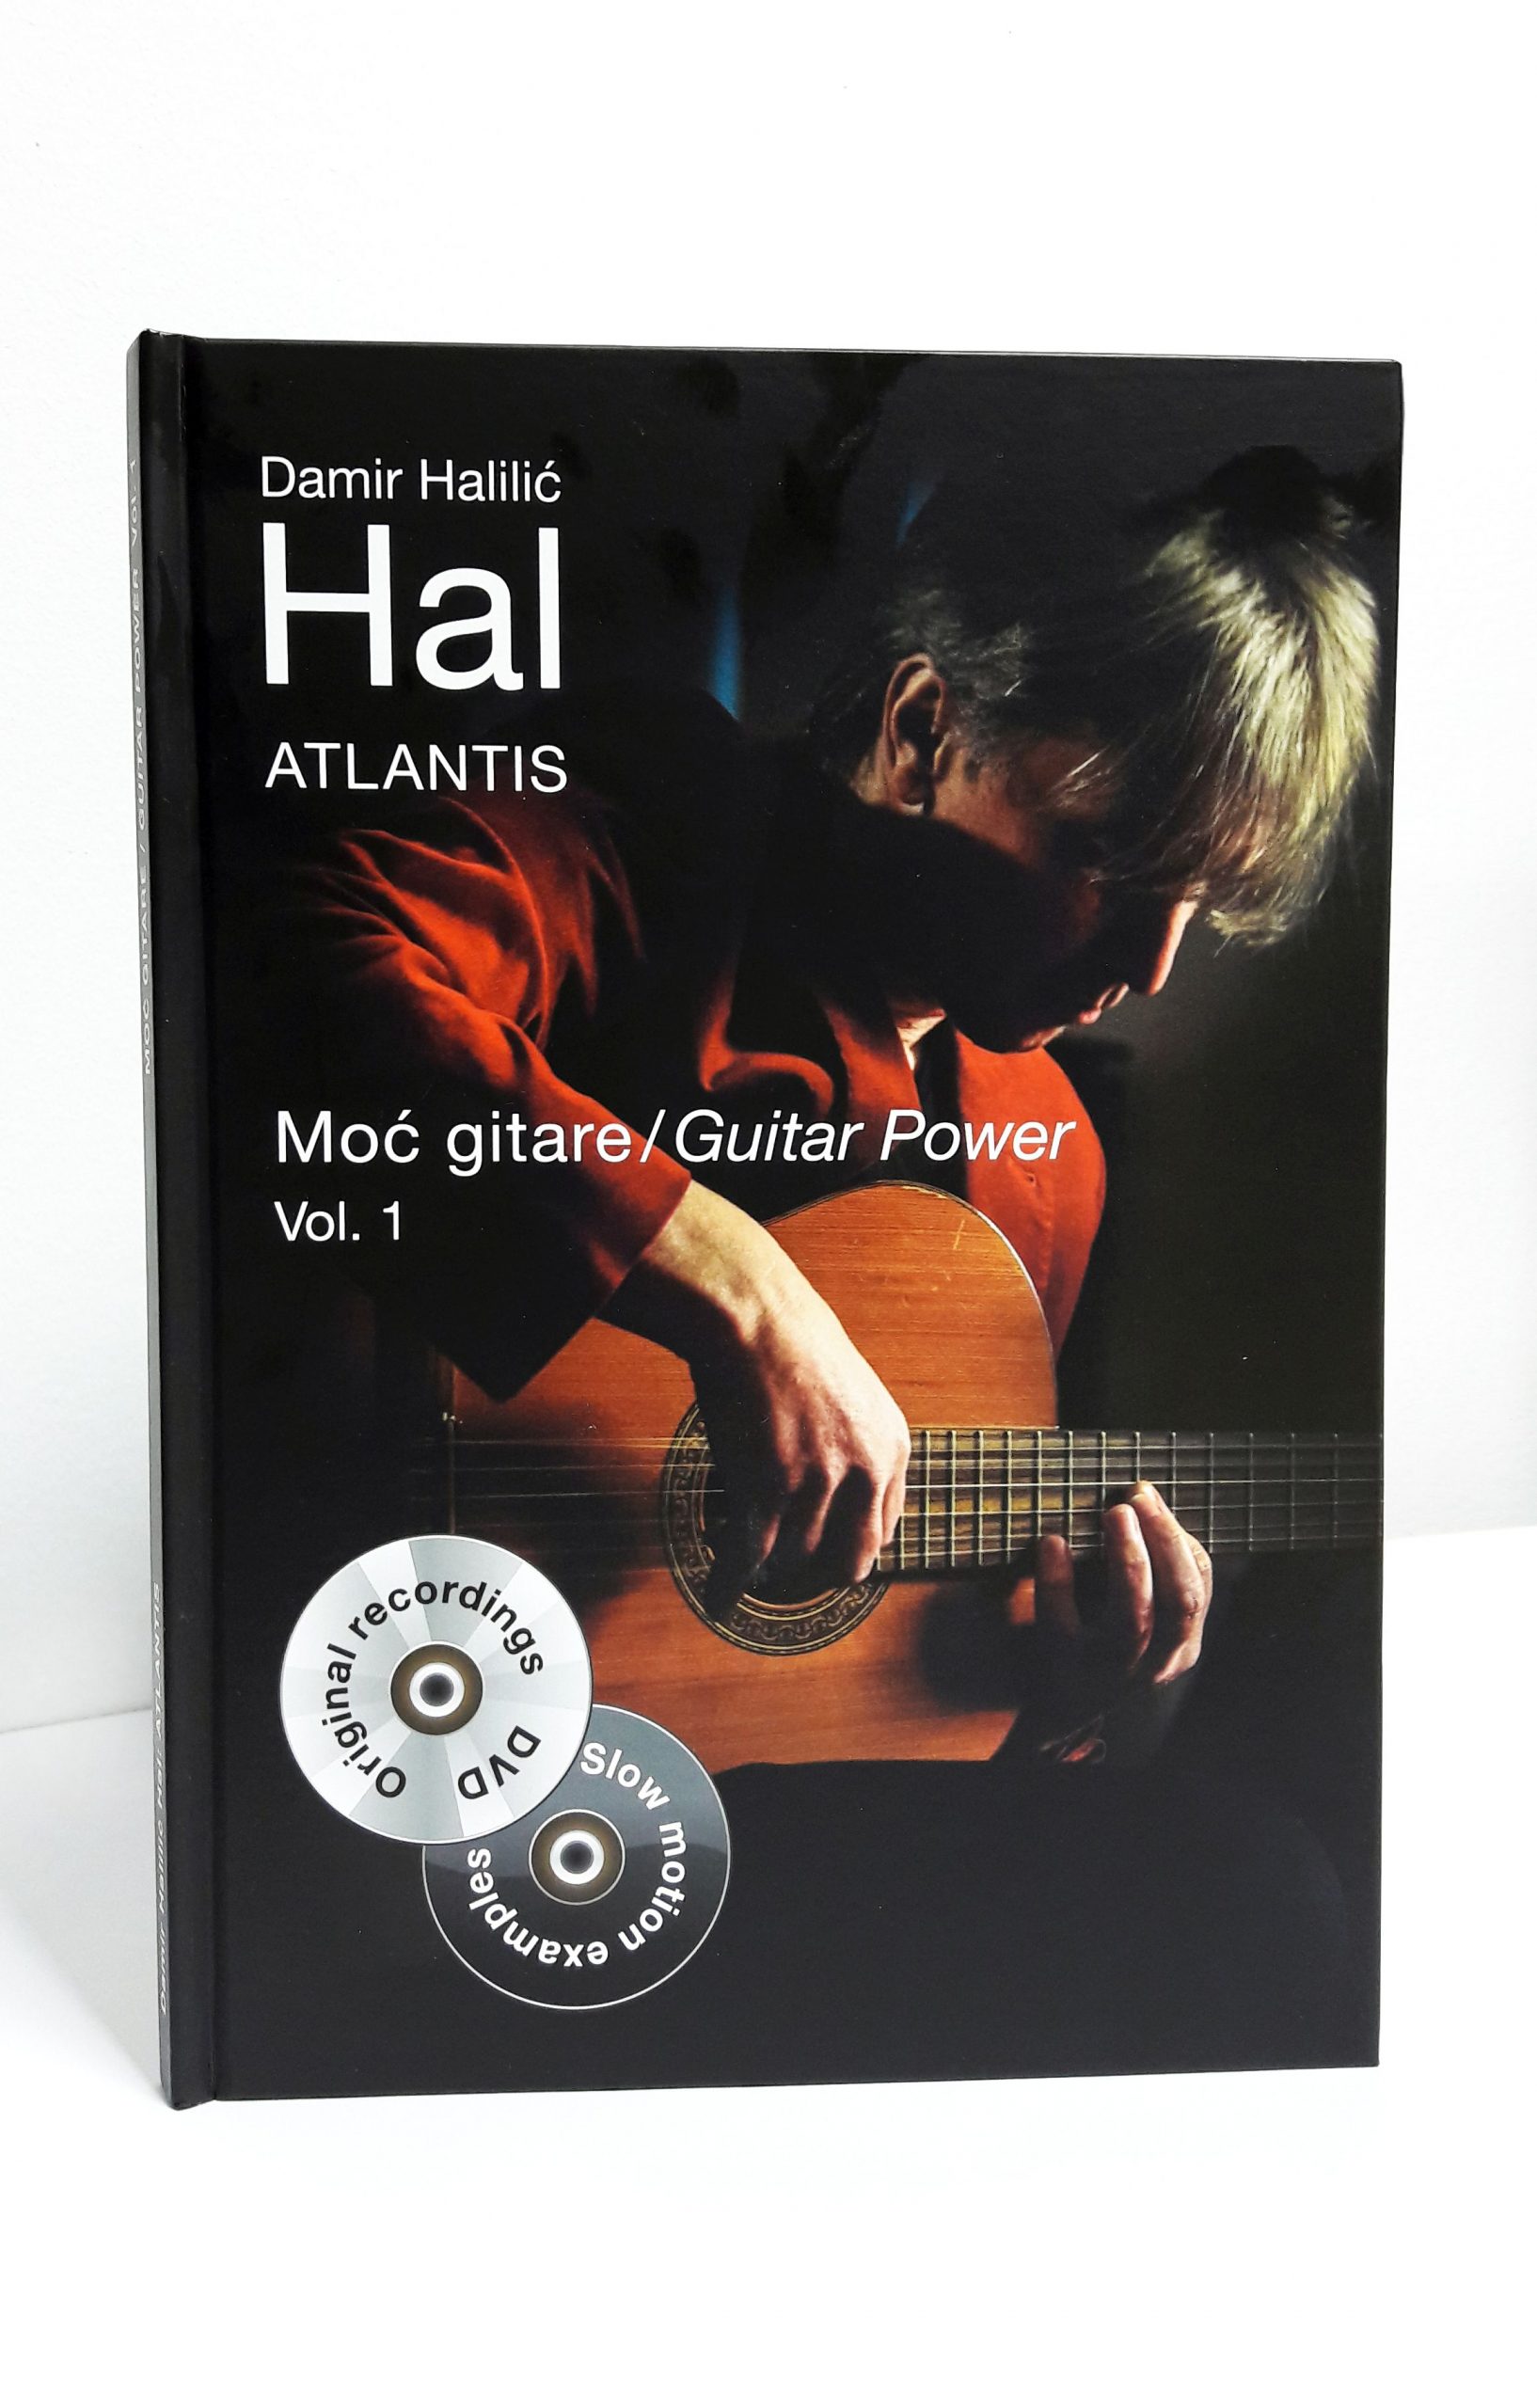 Read more about the article Gitaristički virtuoz i skladatelj Damir Halilić HAL objavio je luksuzno izdanje za sve gitariste! Knjigu s notnim zapisom+2 DVDa ‘Atlantis’